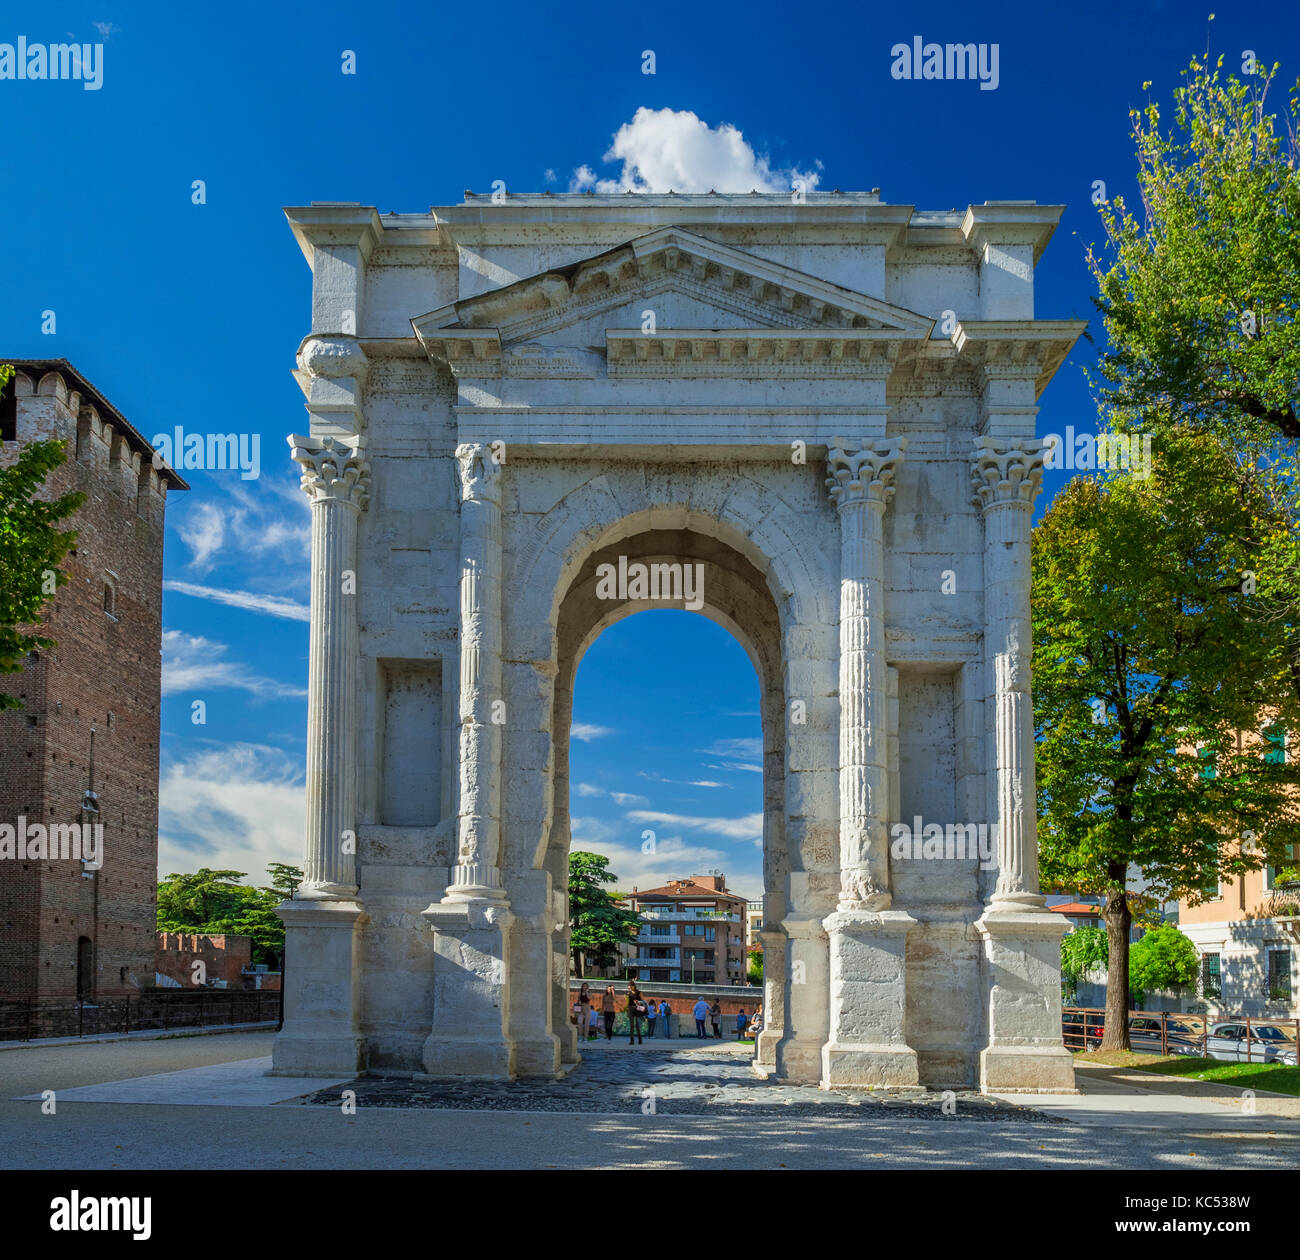 Il romano Arco dei Gavi arco trionfale a verona, Italia, Europa Foto Stock